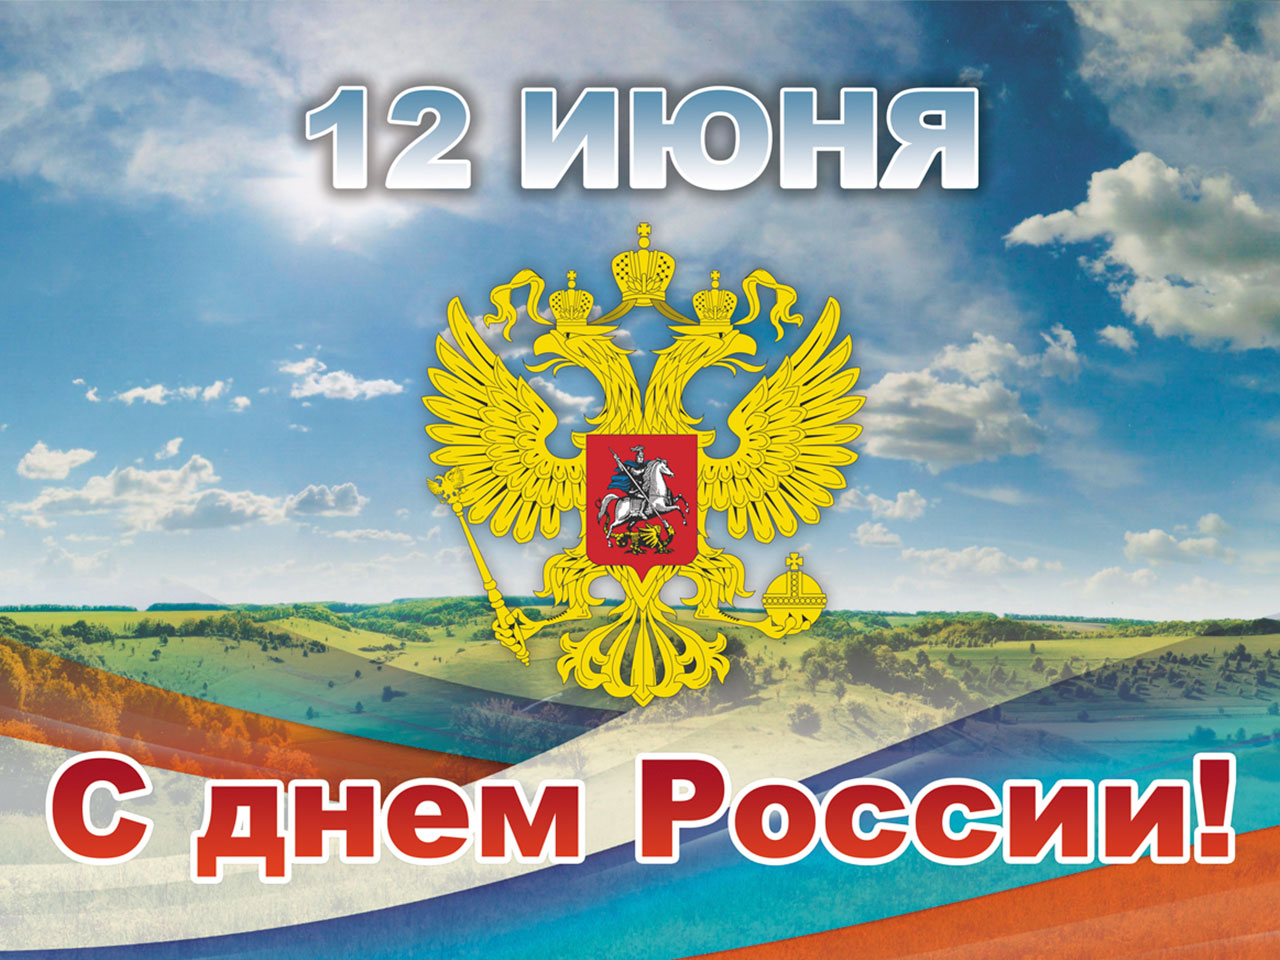 Поздравляем всех с наступающим праздником Днём России!